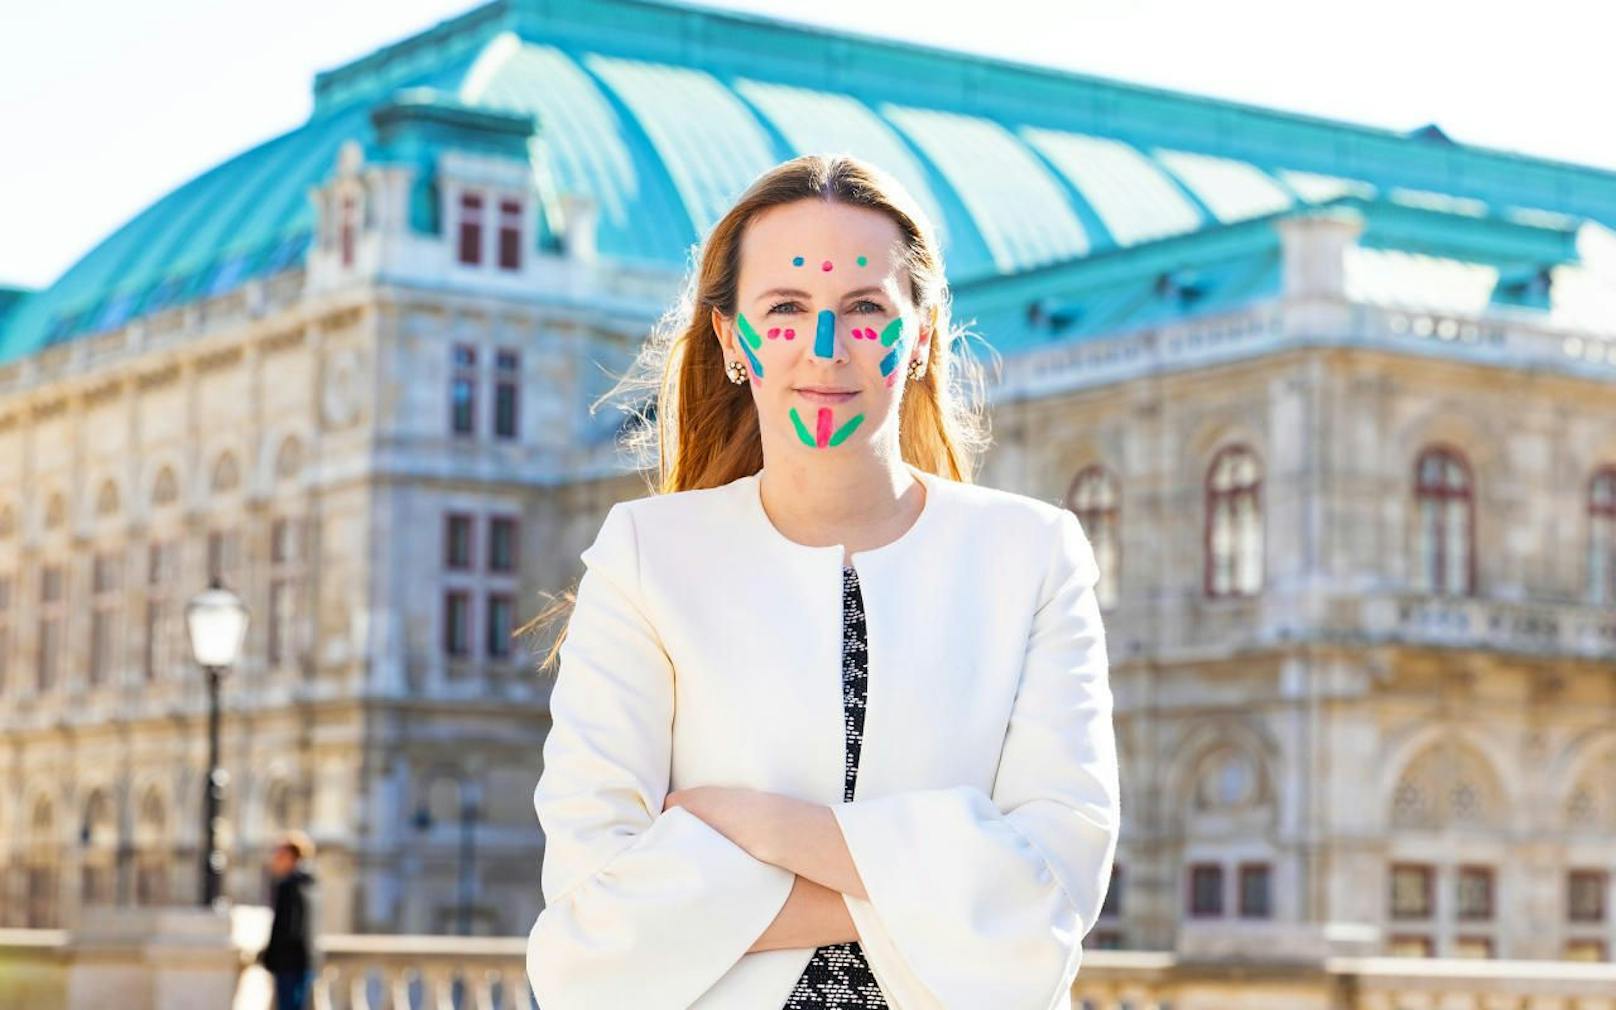 Wien - #ShowYourRare: Opernball-Organisatorin Maria Großbauer zeigt ihr Engagement für Menschen mit seltenen Erkrankungen